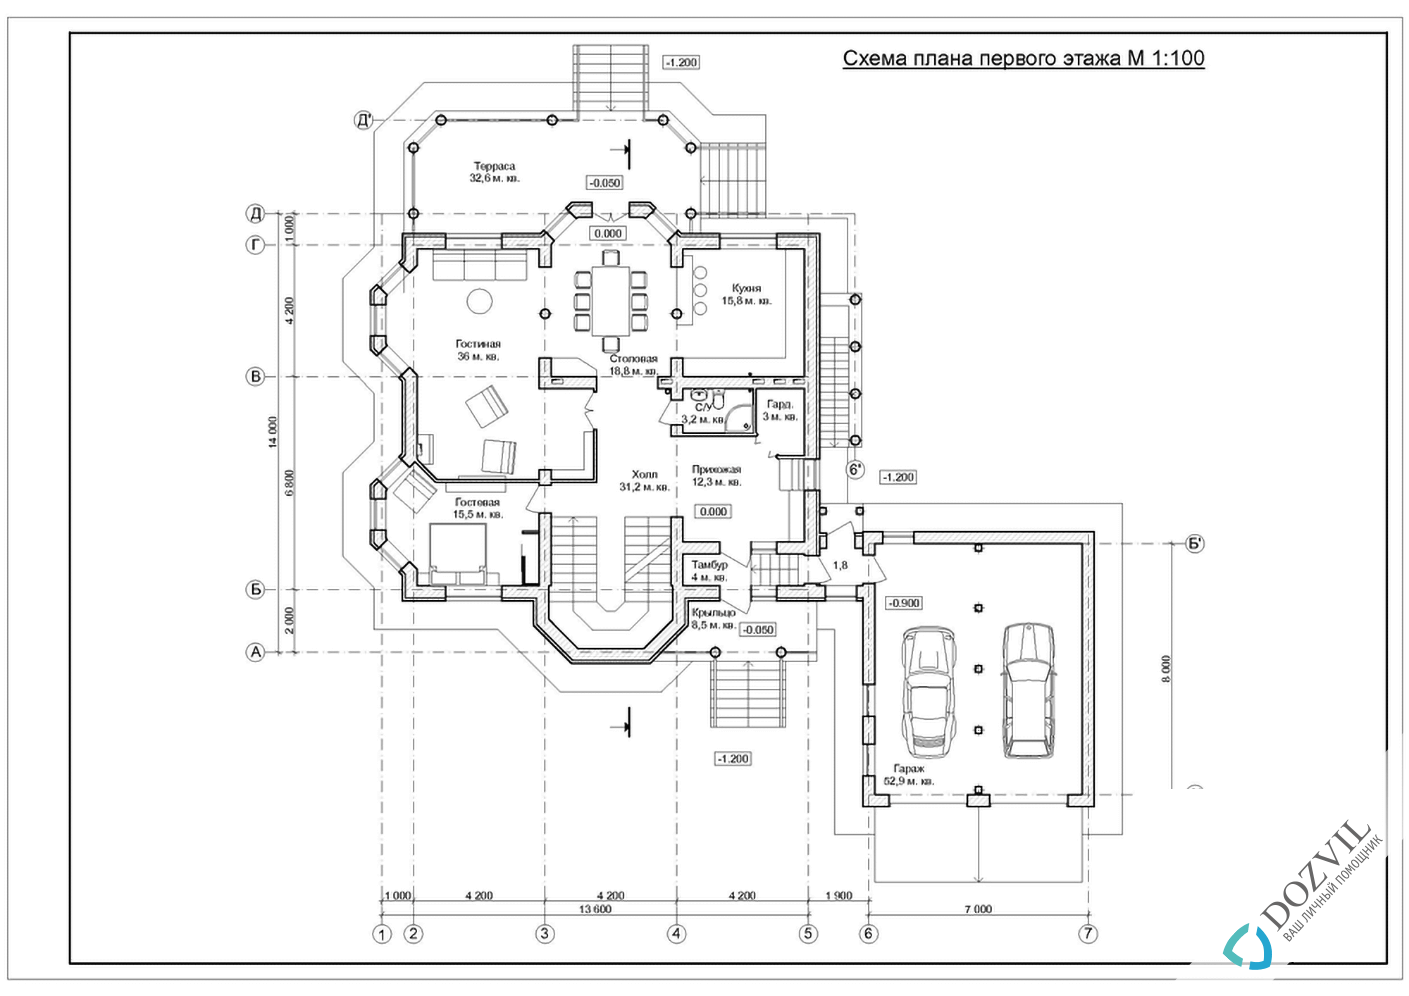 Узаконить реконструкцию > Реконструкция дома с общей площадью до 500 квадратных метров > 2 этап - Разработка эскиза намерений строительства